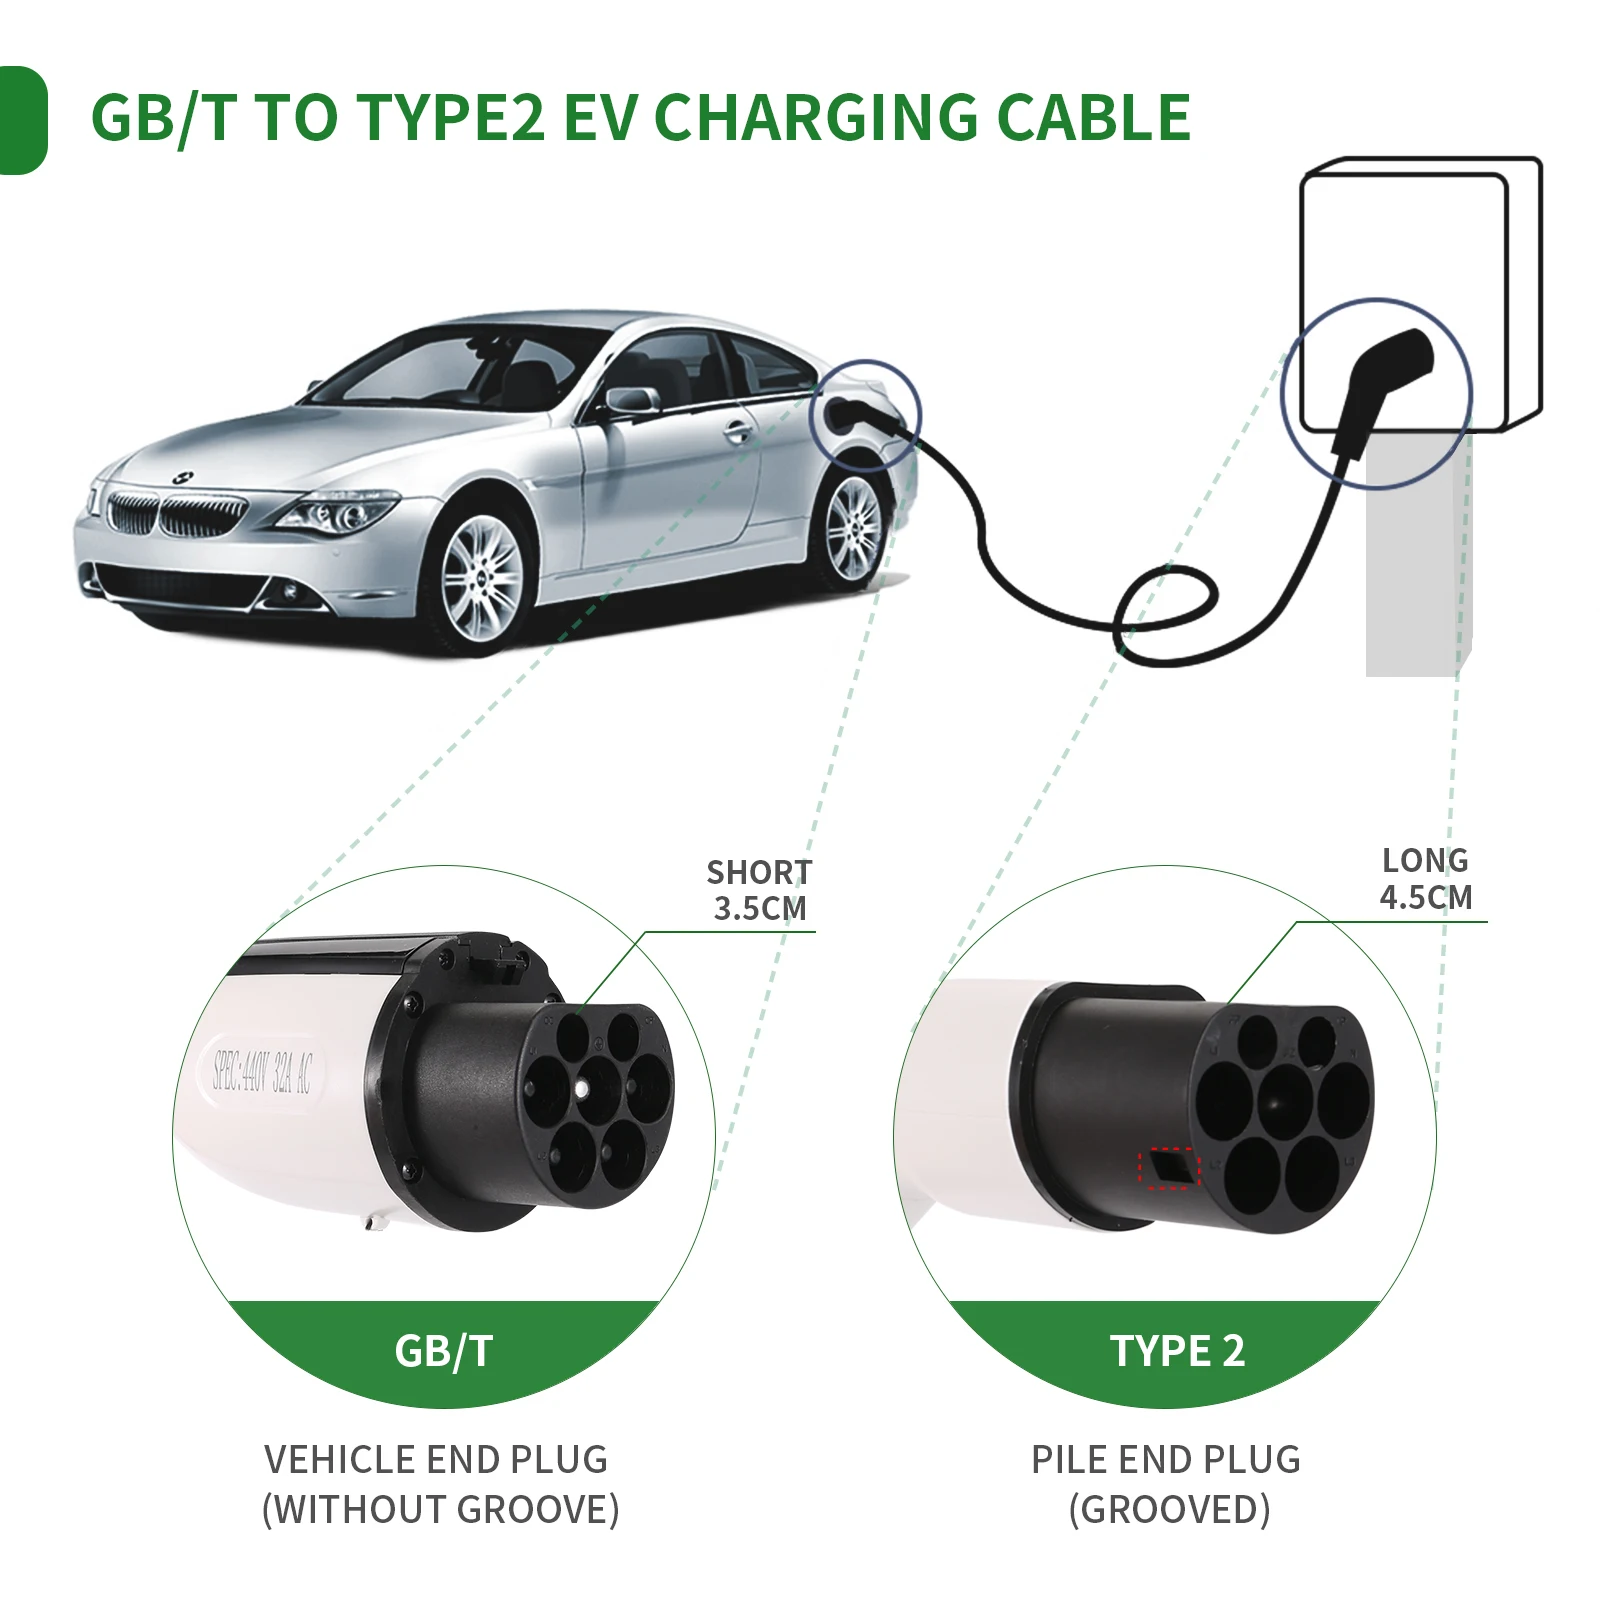 Câble de charge Ev Type 2 vers GB/T 32A, 1 phase 3 P, 7,2 kW 22kW, station  de recharge pour véhicule électrique, voitures avec rallonge, 5m 7m -  AliExpress